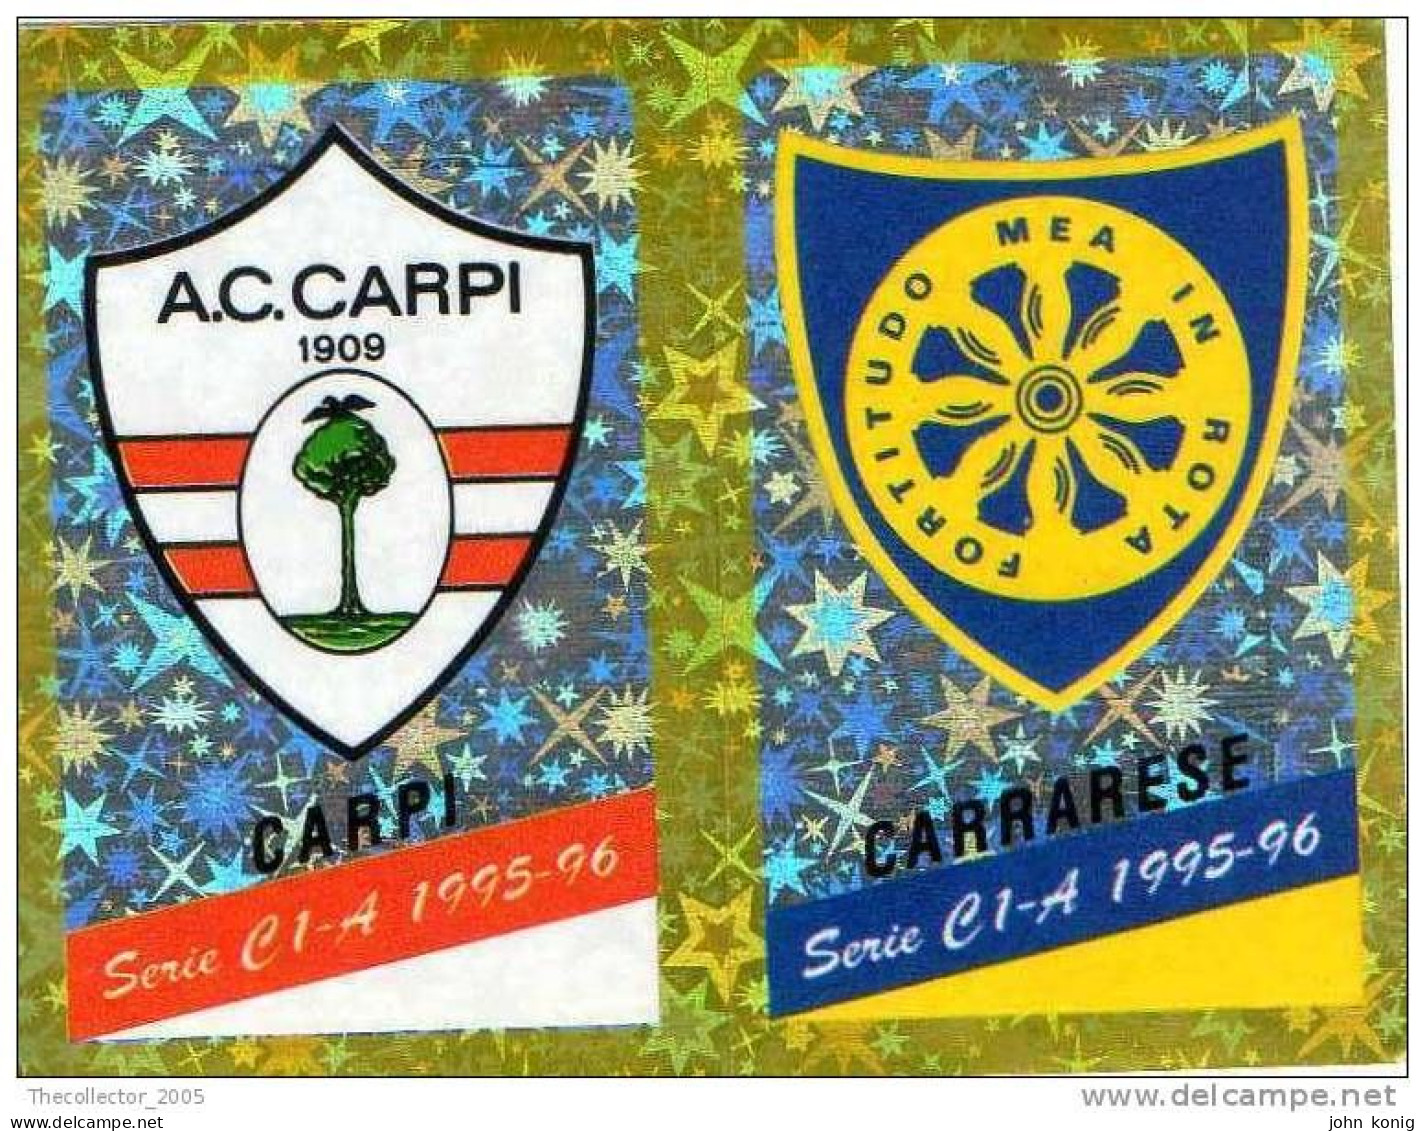 CALCIATORI - CALCIO Figurine Panini-calciatori 1995-96-n.527ab-scudetto Carpi-Carrarese (prismatico) - NUOVA-MAI INCOLLA - Edición Italiana